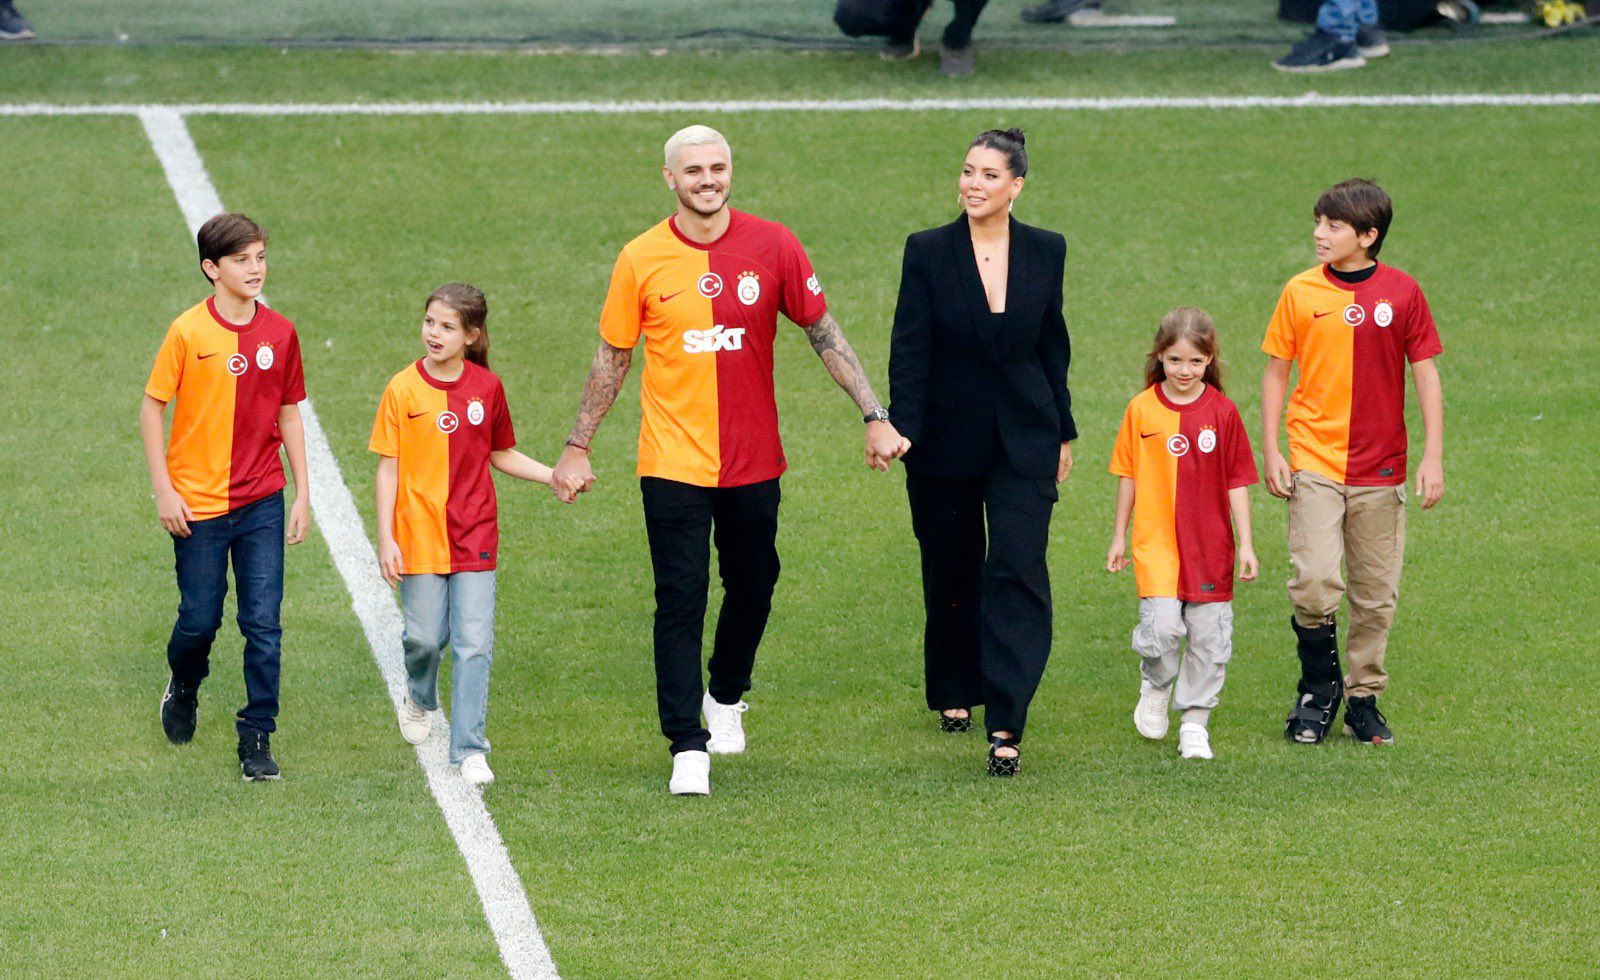 Wanda Nara y Mauro Icardi en el recibimiento que les hicieron los hinchas del club Galatasaray (@GalatasaraySK)